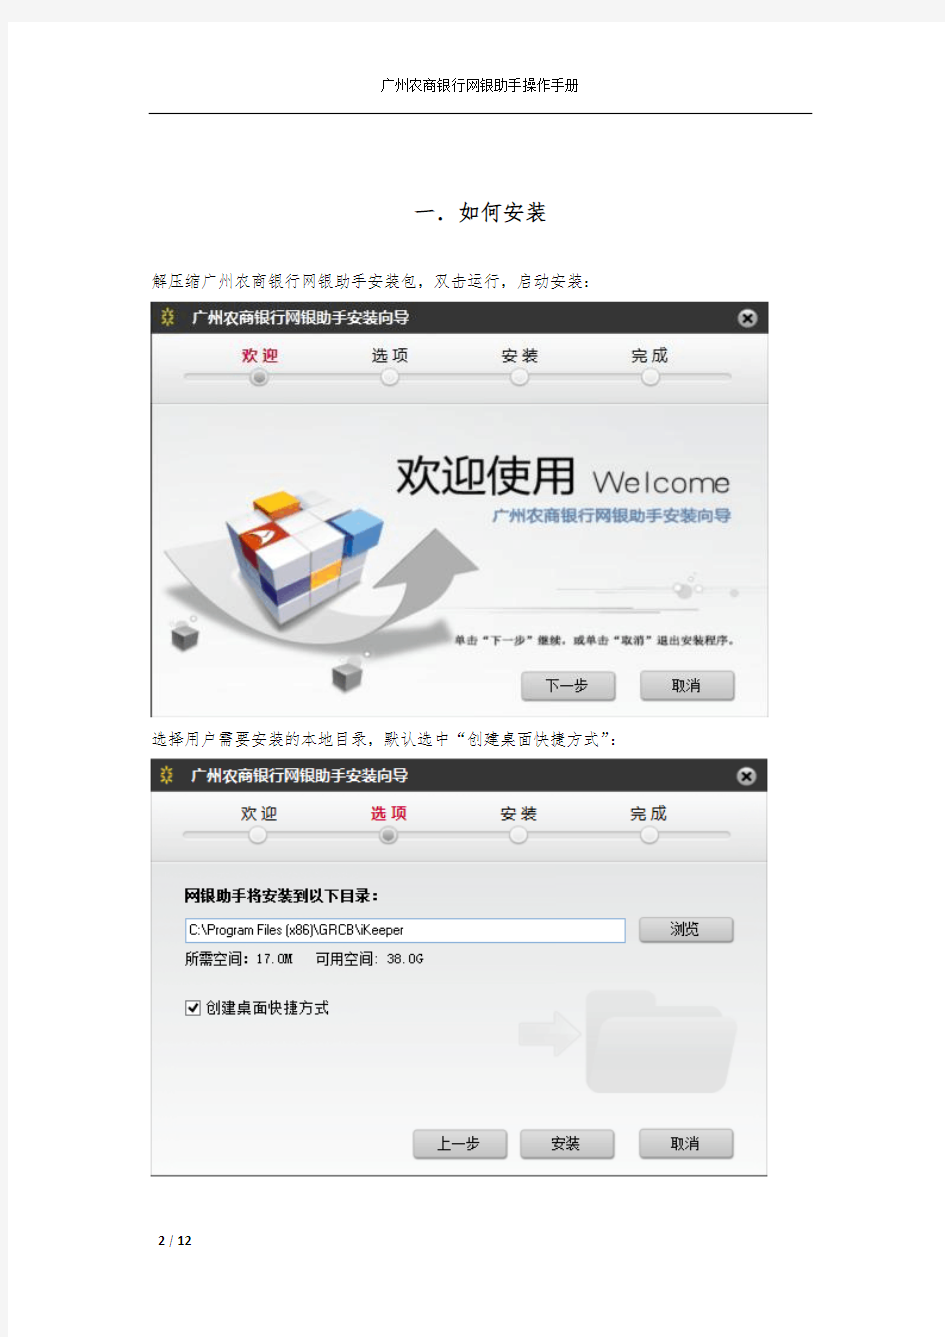 广州农商银行网银助手客户操作手册